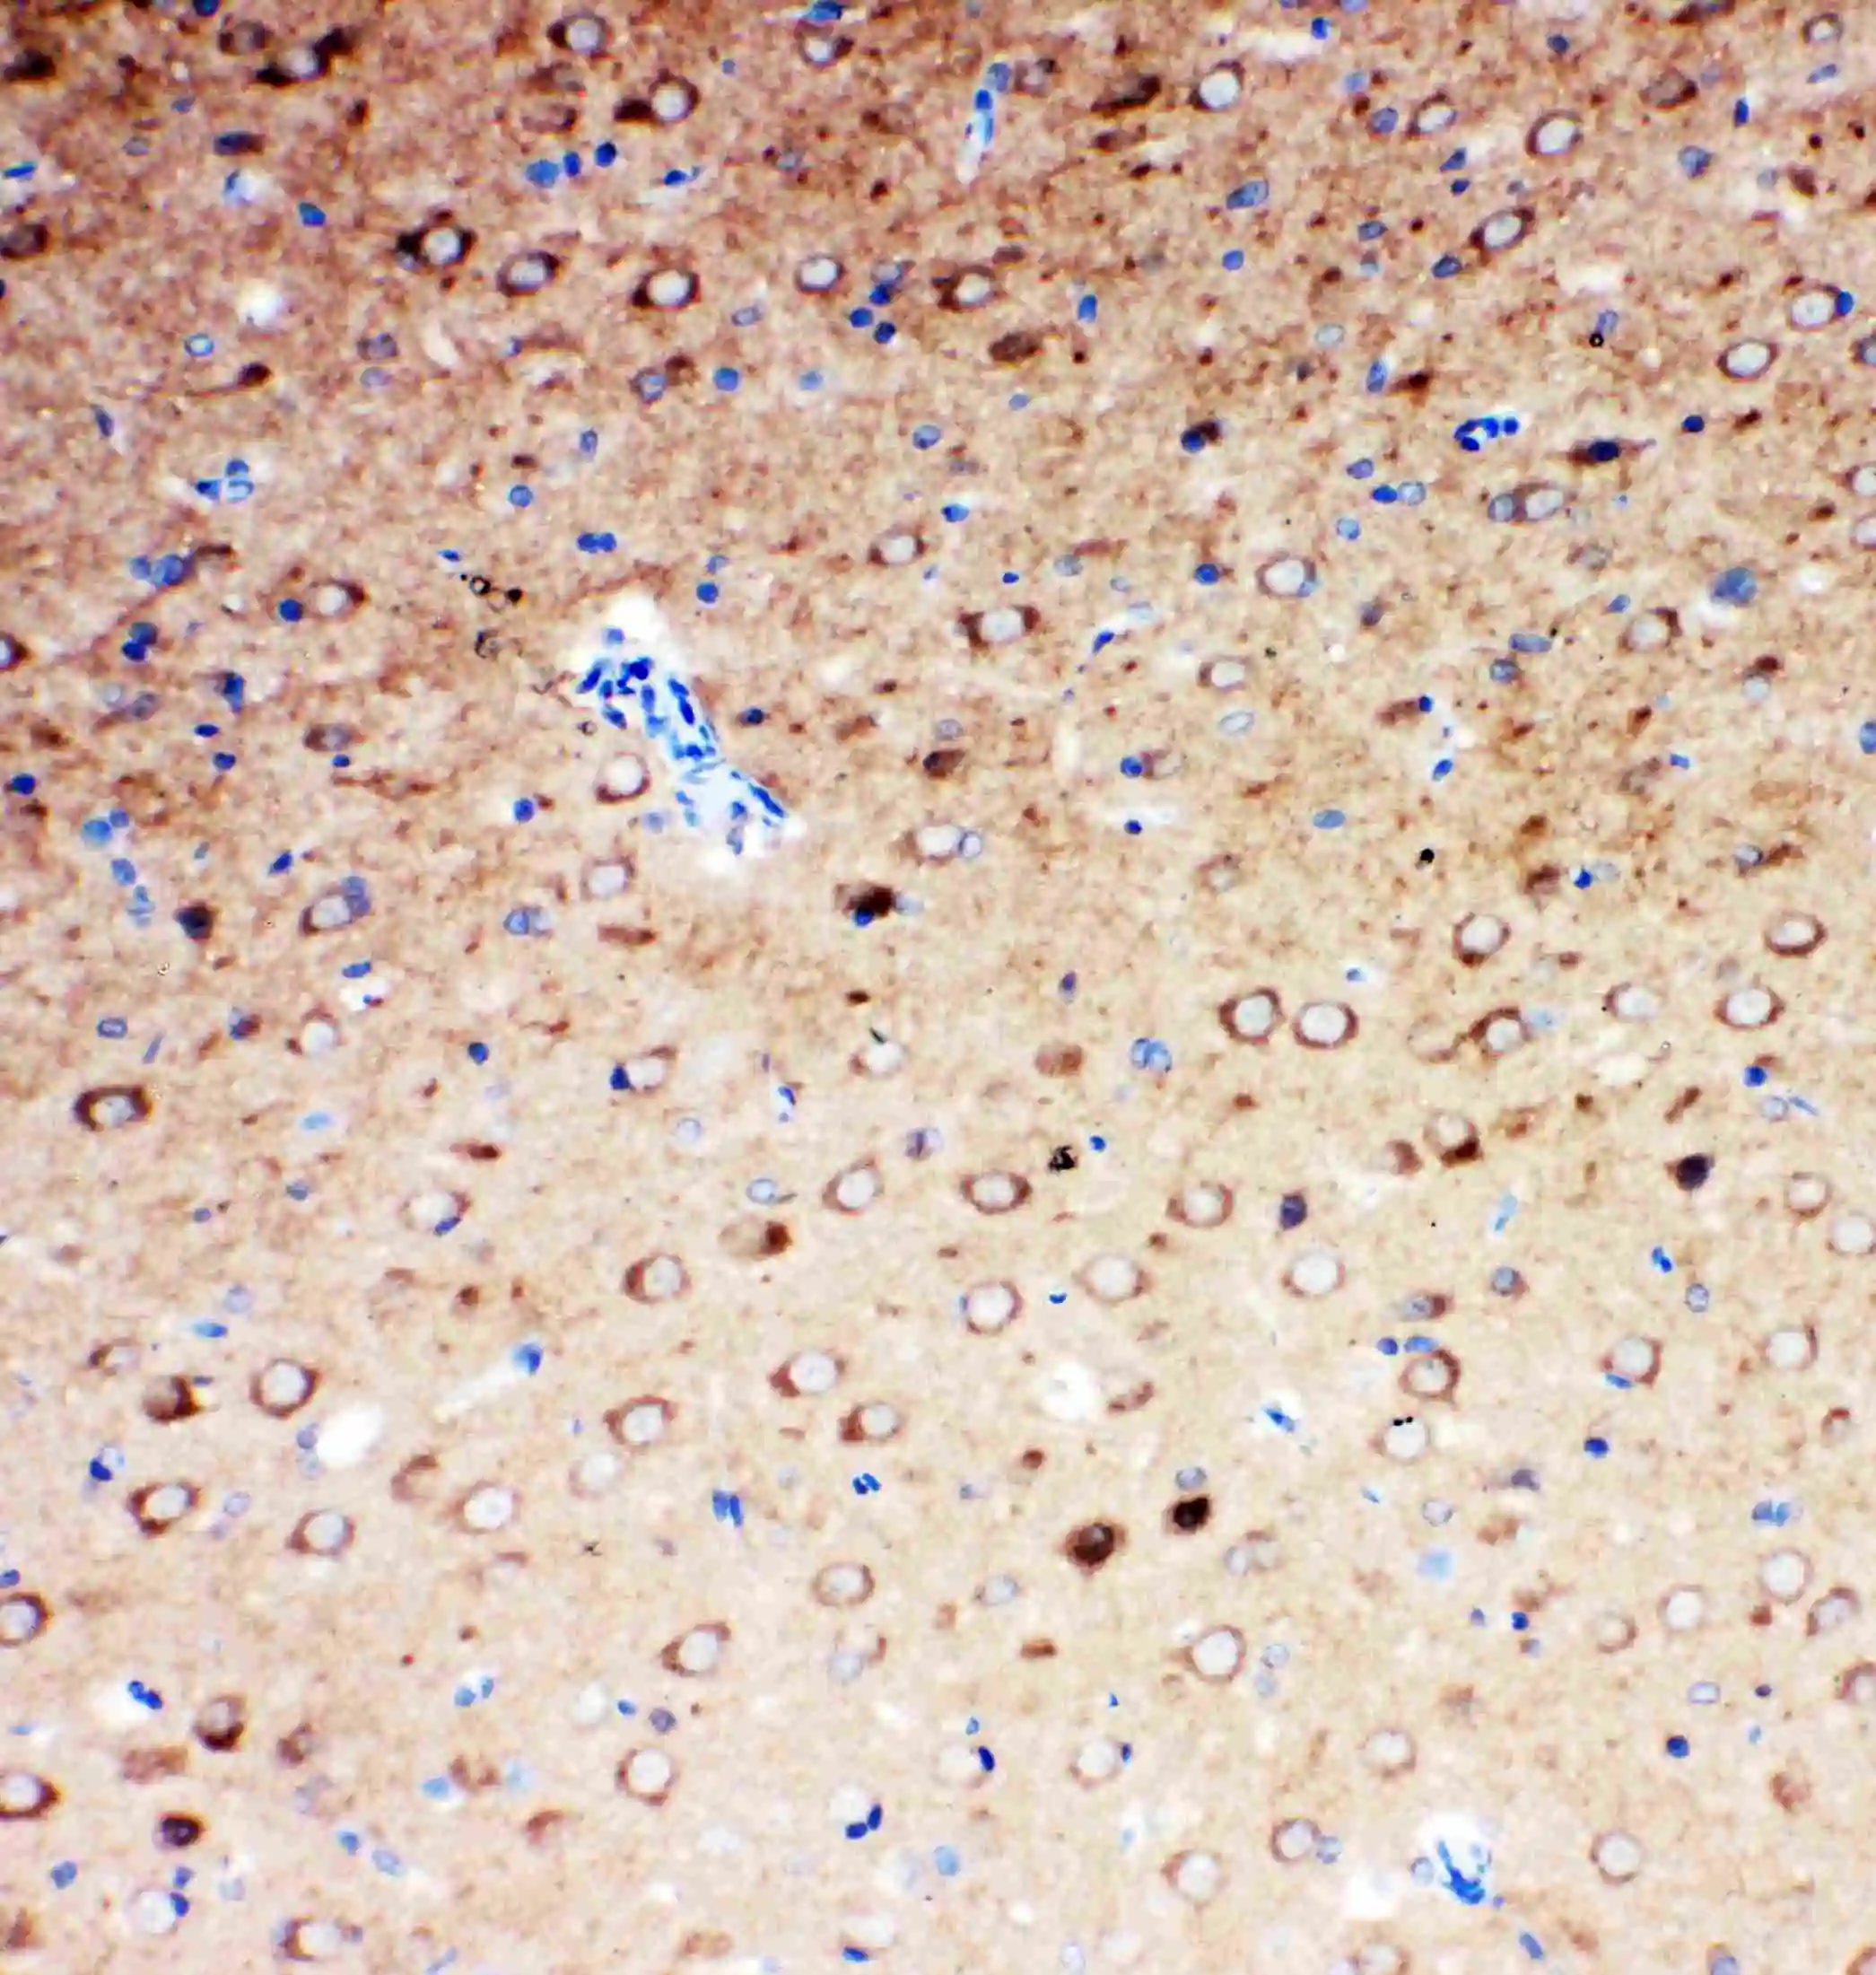 IHC-P of rat brain tissue